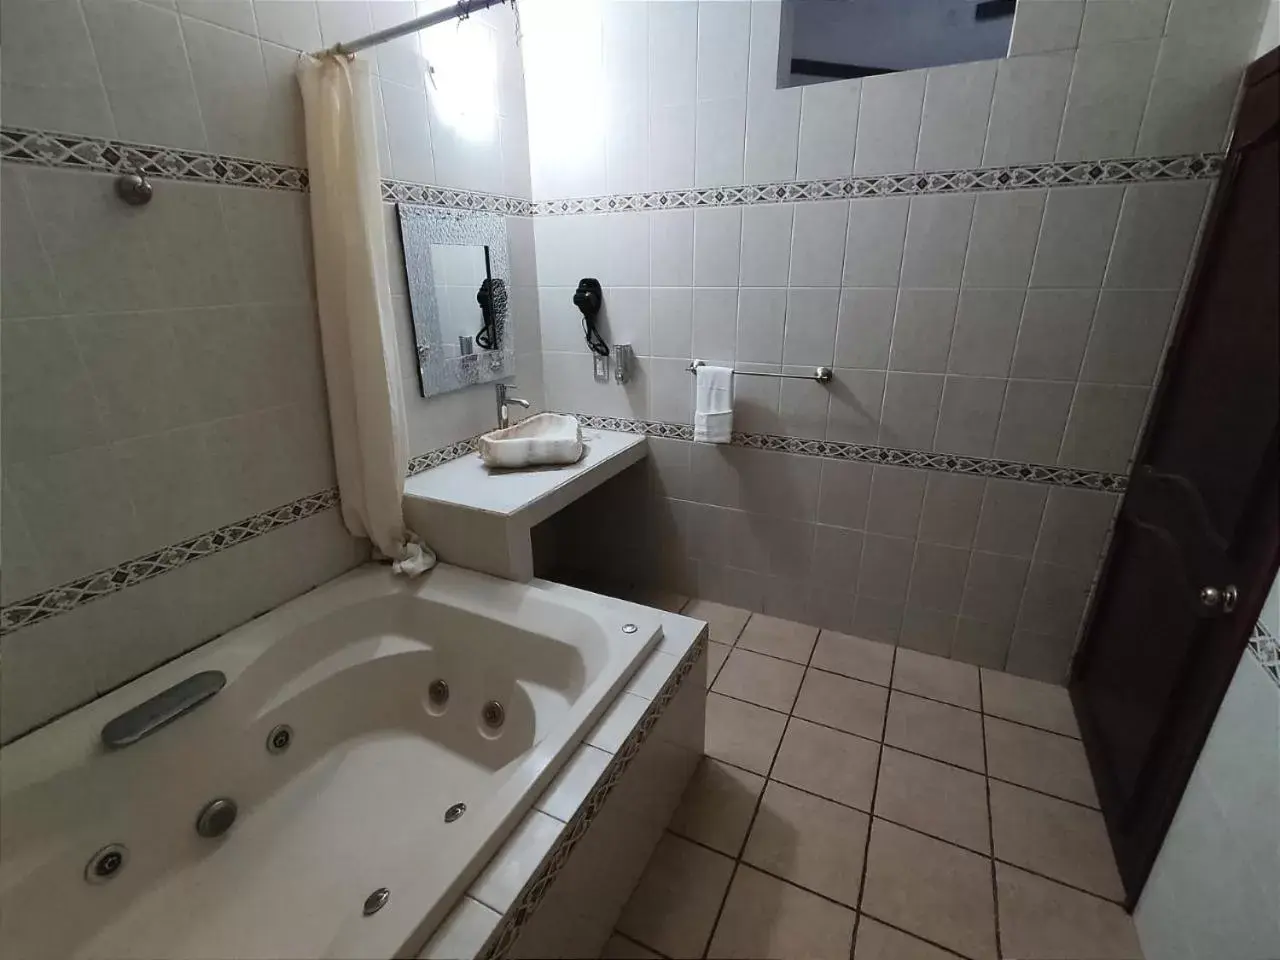 Bathroom in Hotel Peña Florencia